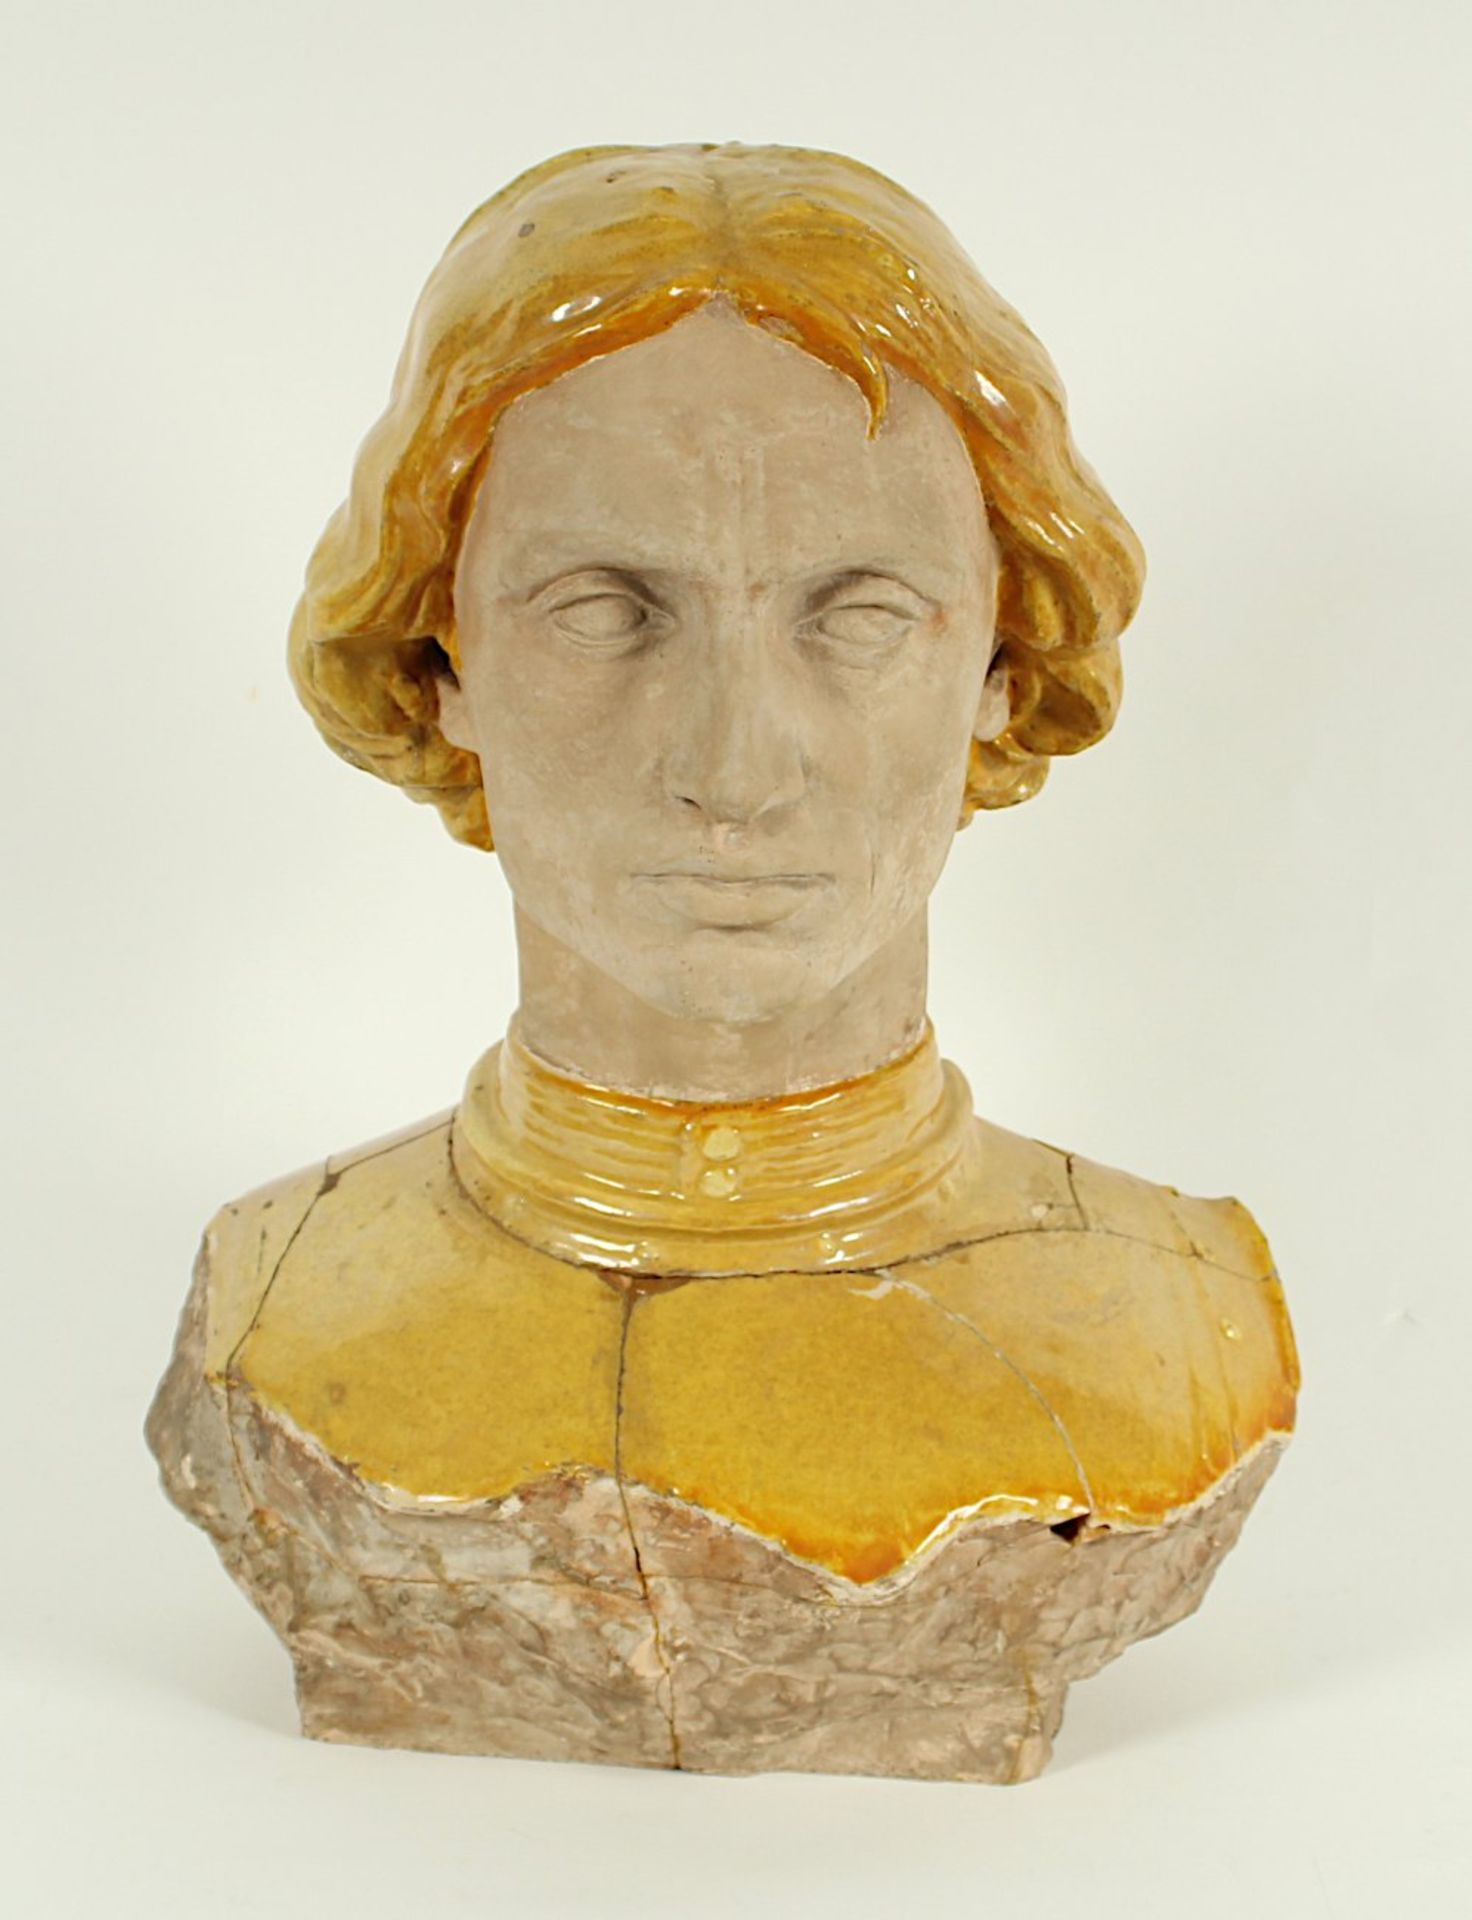 JUGENDSTILBÜSTE, Lorenzo de' Medici (?), Terracotta, teilweise gelb glasiert, beschädigt und